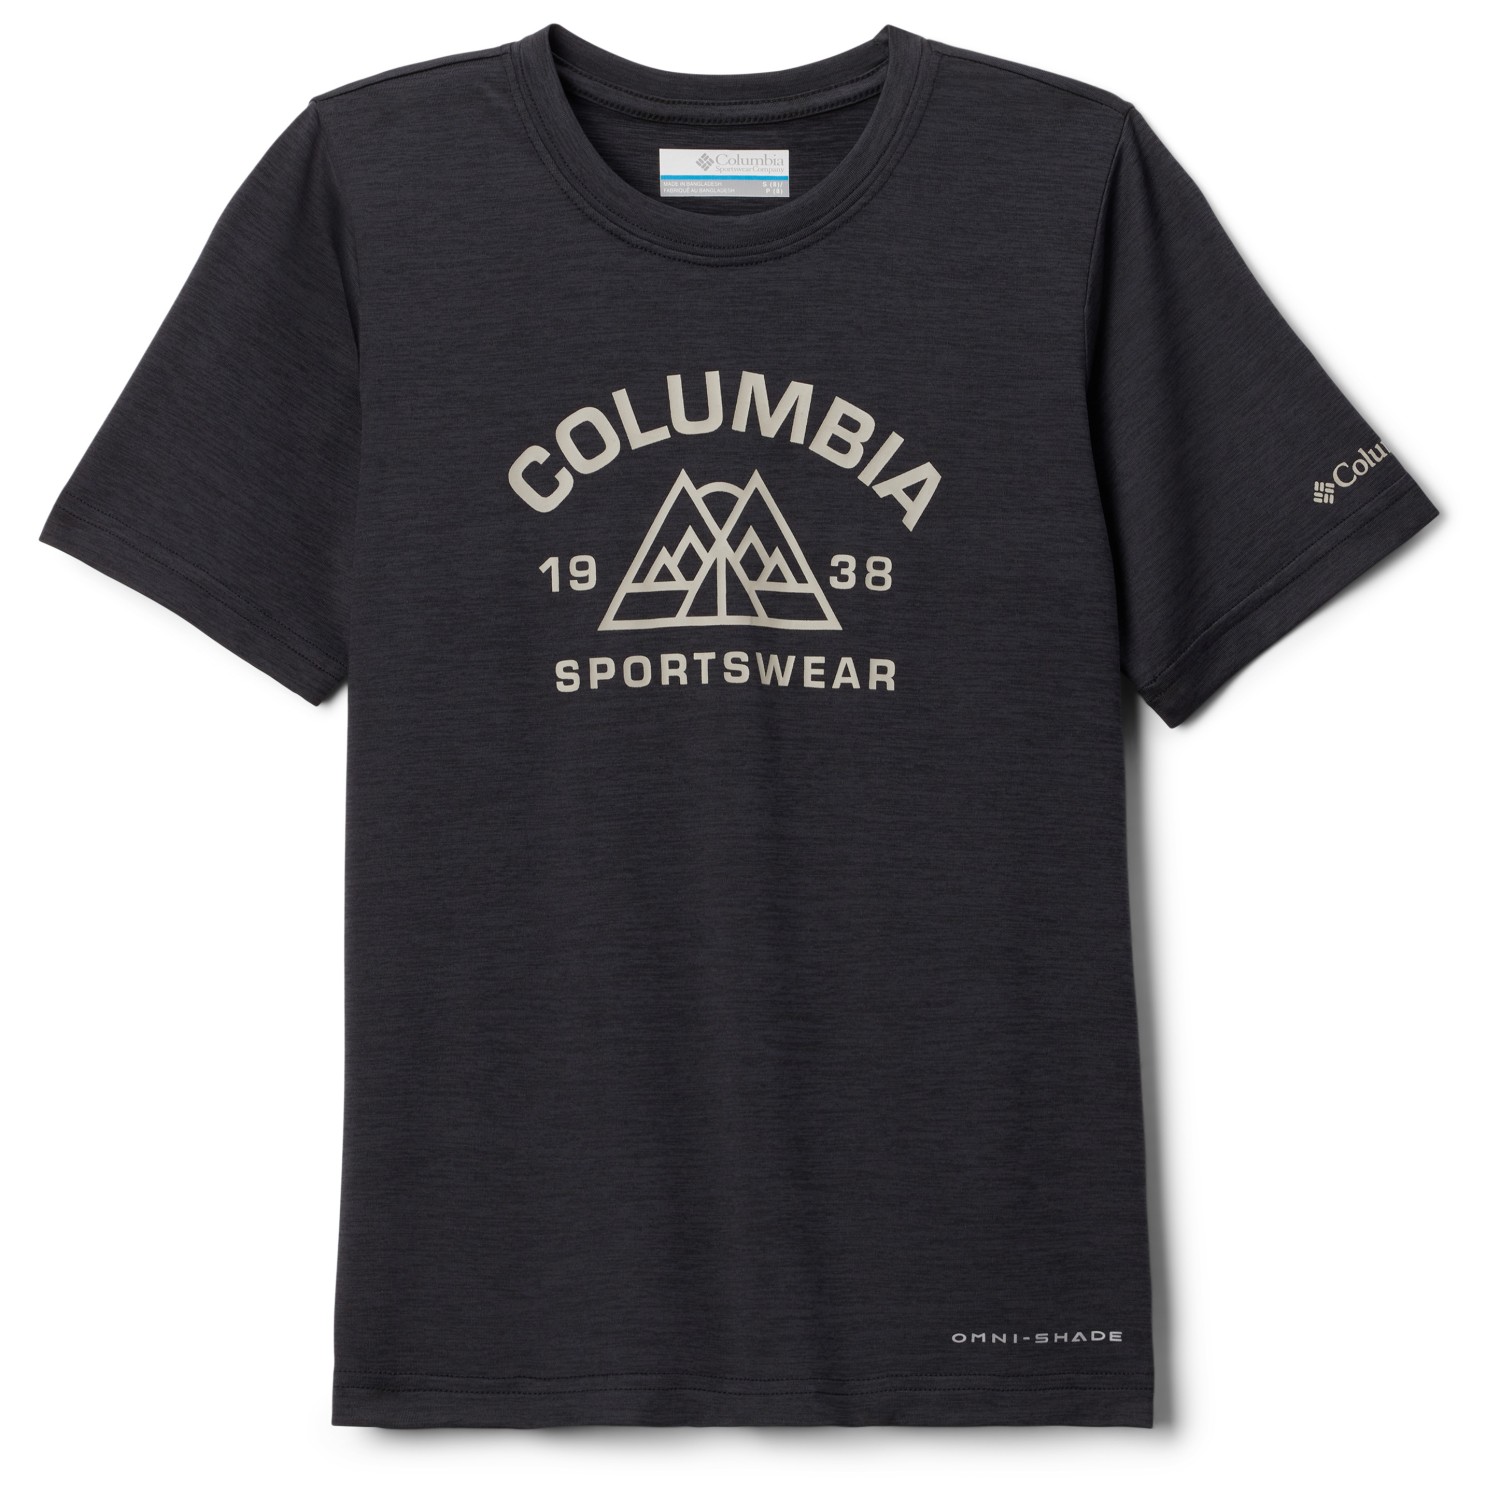 Функциональная рубашка Columbia Kid's Mount Echo Graphic Shirt S/S, цвет Black/Peaked Badge рубашка rip curl apex s s shirt цвет 3021 bone размер m